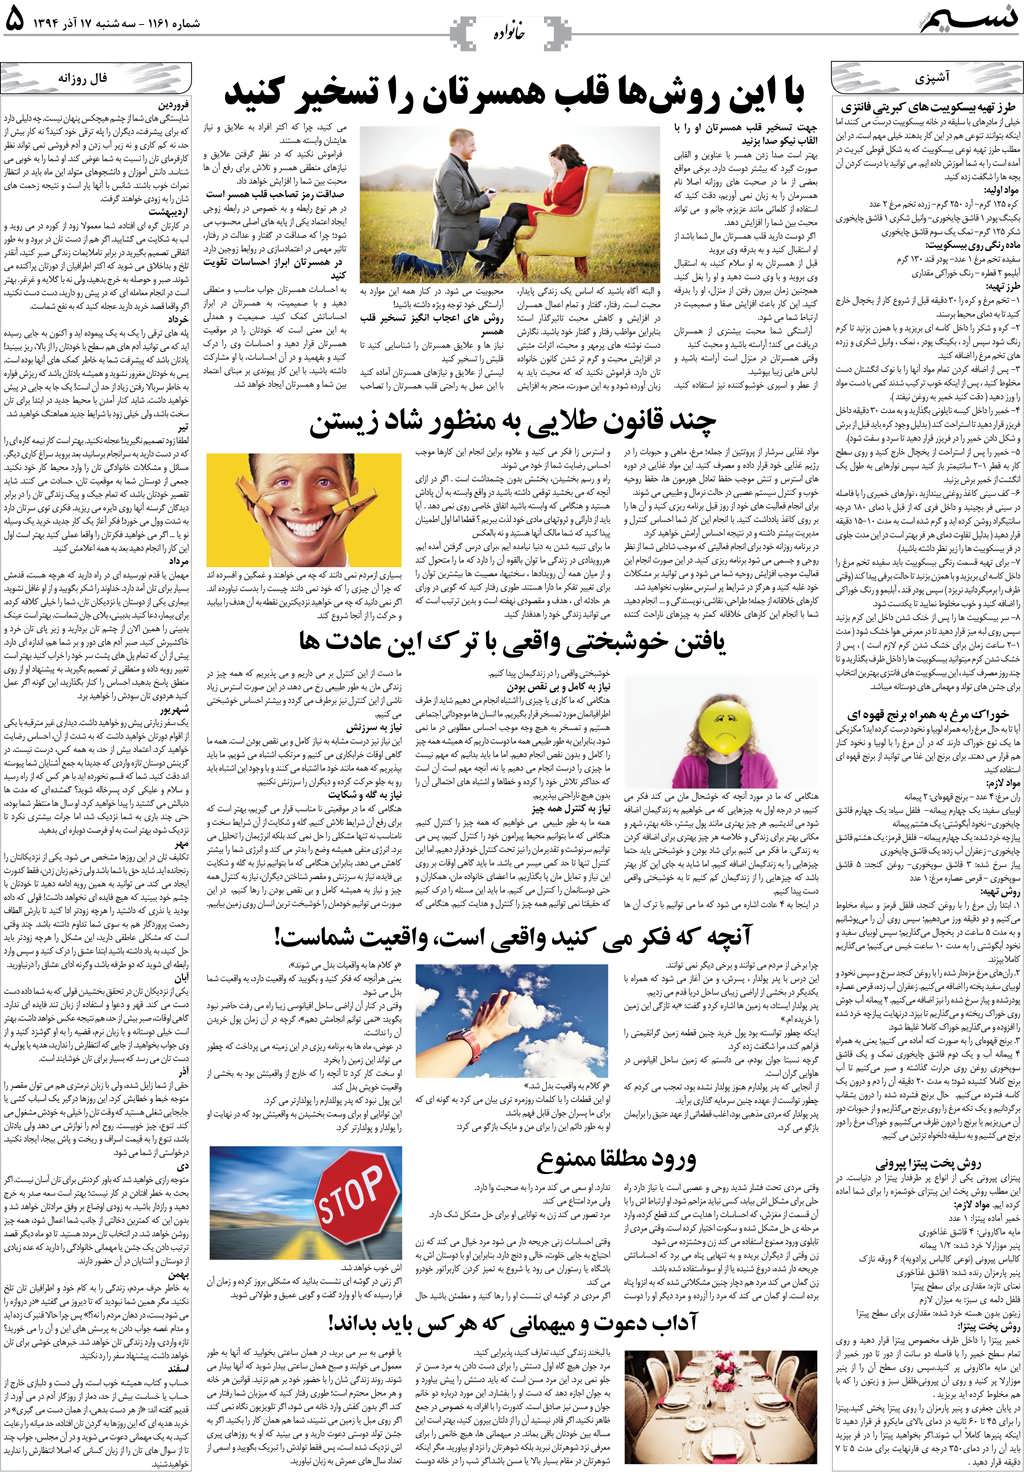 صفحه خانواده روزنامه نسیم شماره 1161